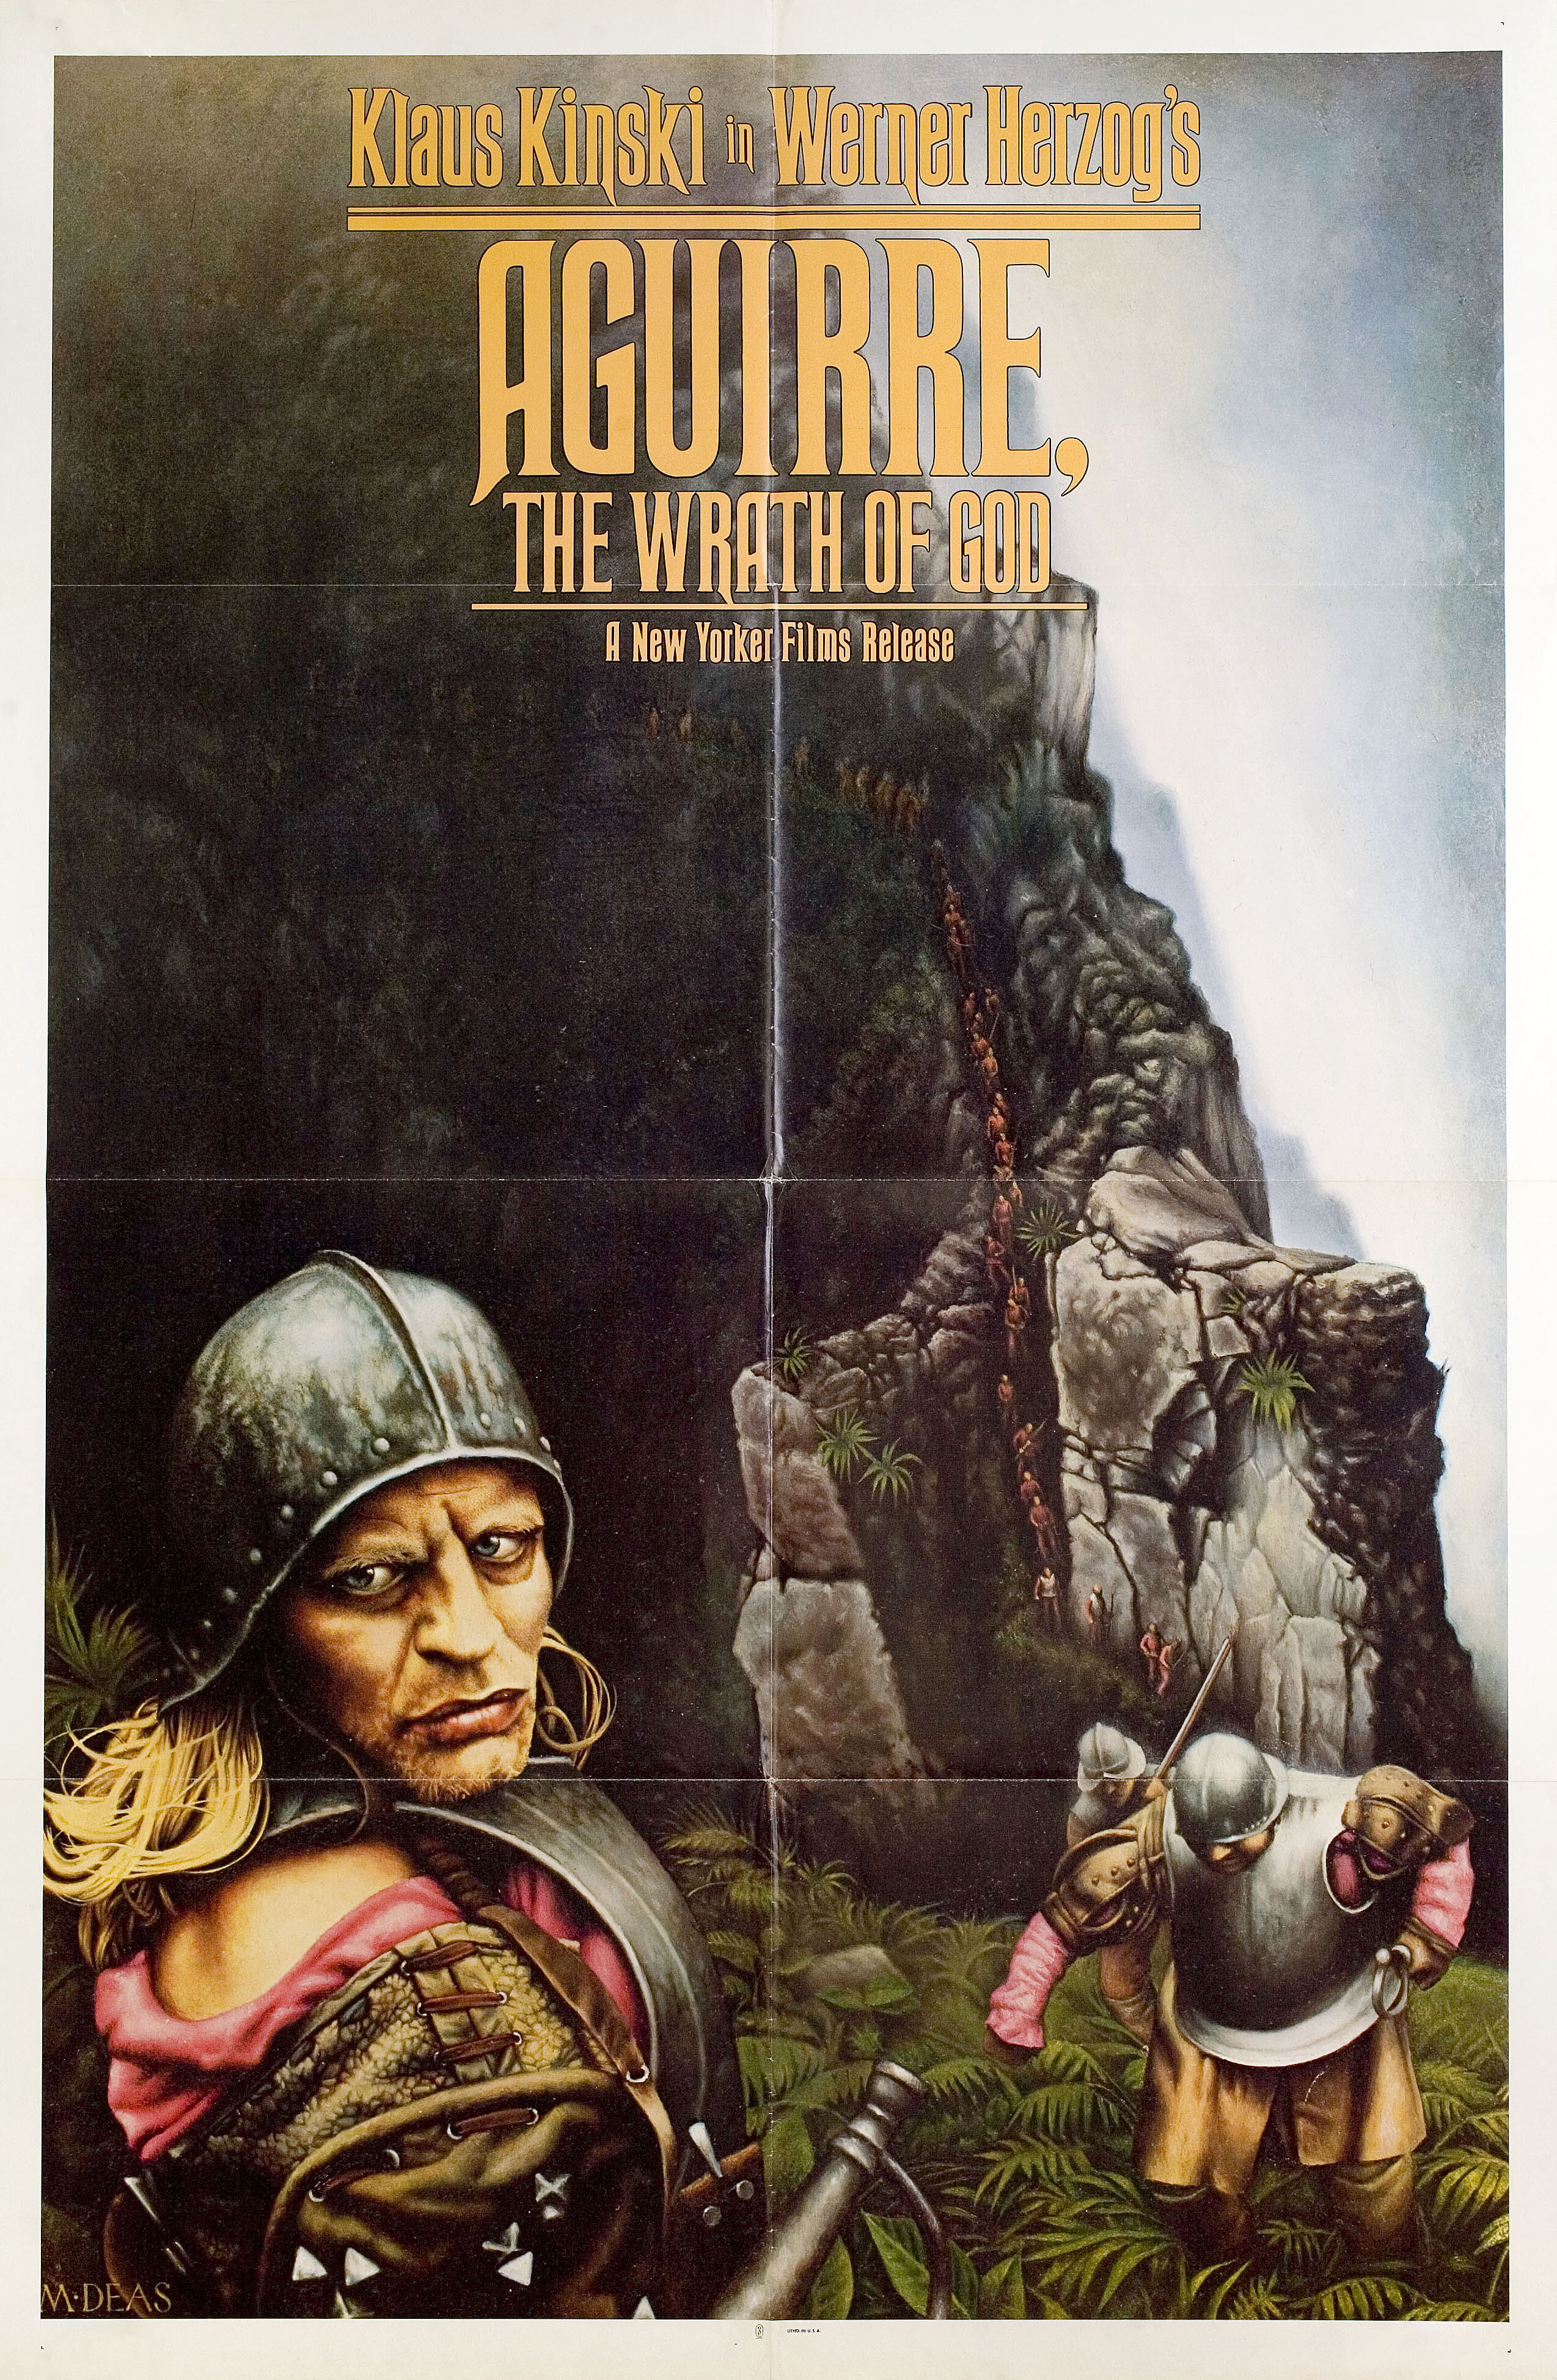 Агирре, гнев Божий (Aguirre, the Wrath of God, 1972), режиссёр Вернер Херцог, иллюстрированный постер к фильму (США, 1972 год), автор Майкл Дж. Дис